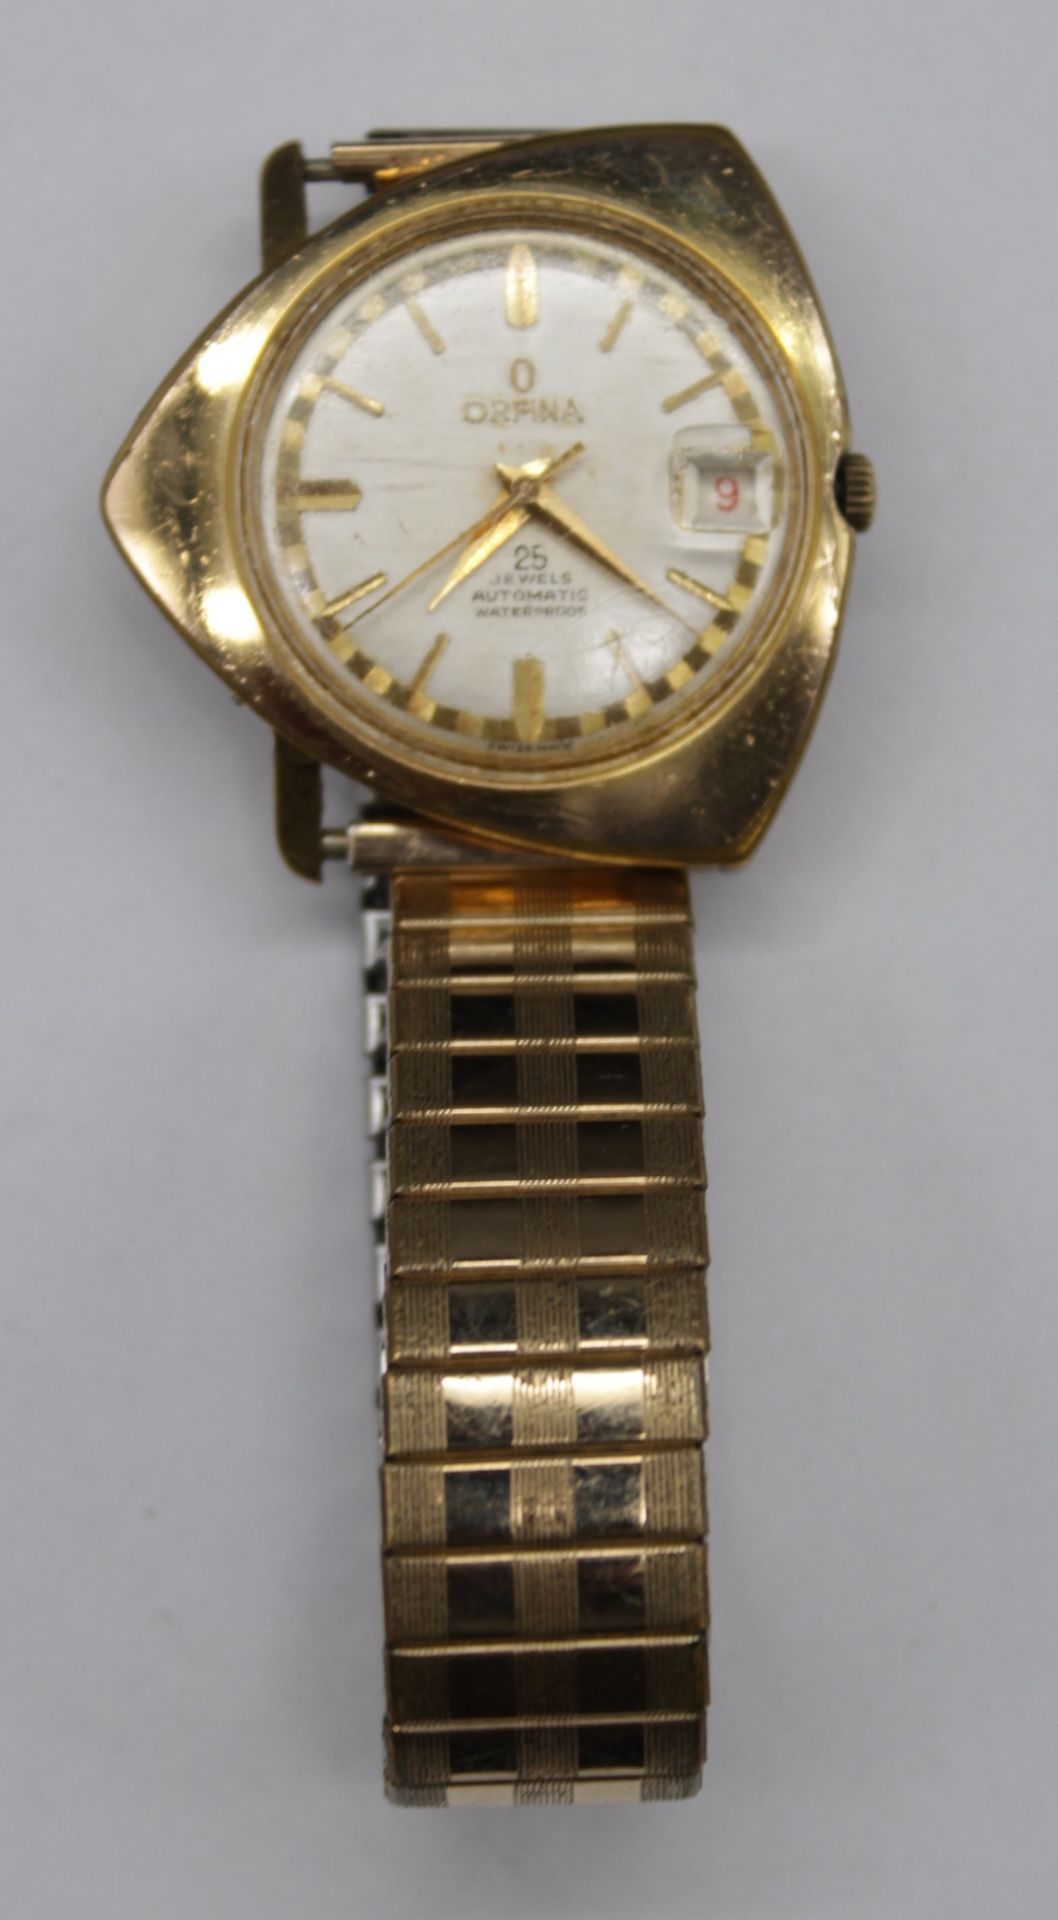 Armbanduhr, Orfina, Automatic, Werk läuft, getragene Erhaltung, ca. 3,8cm